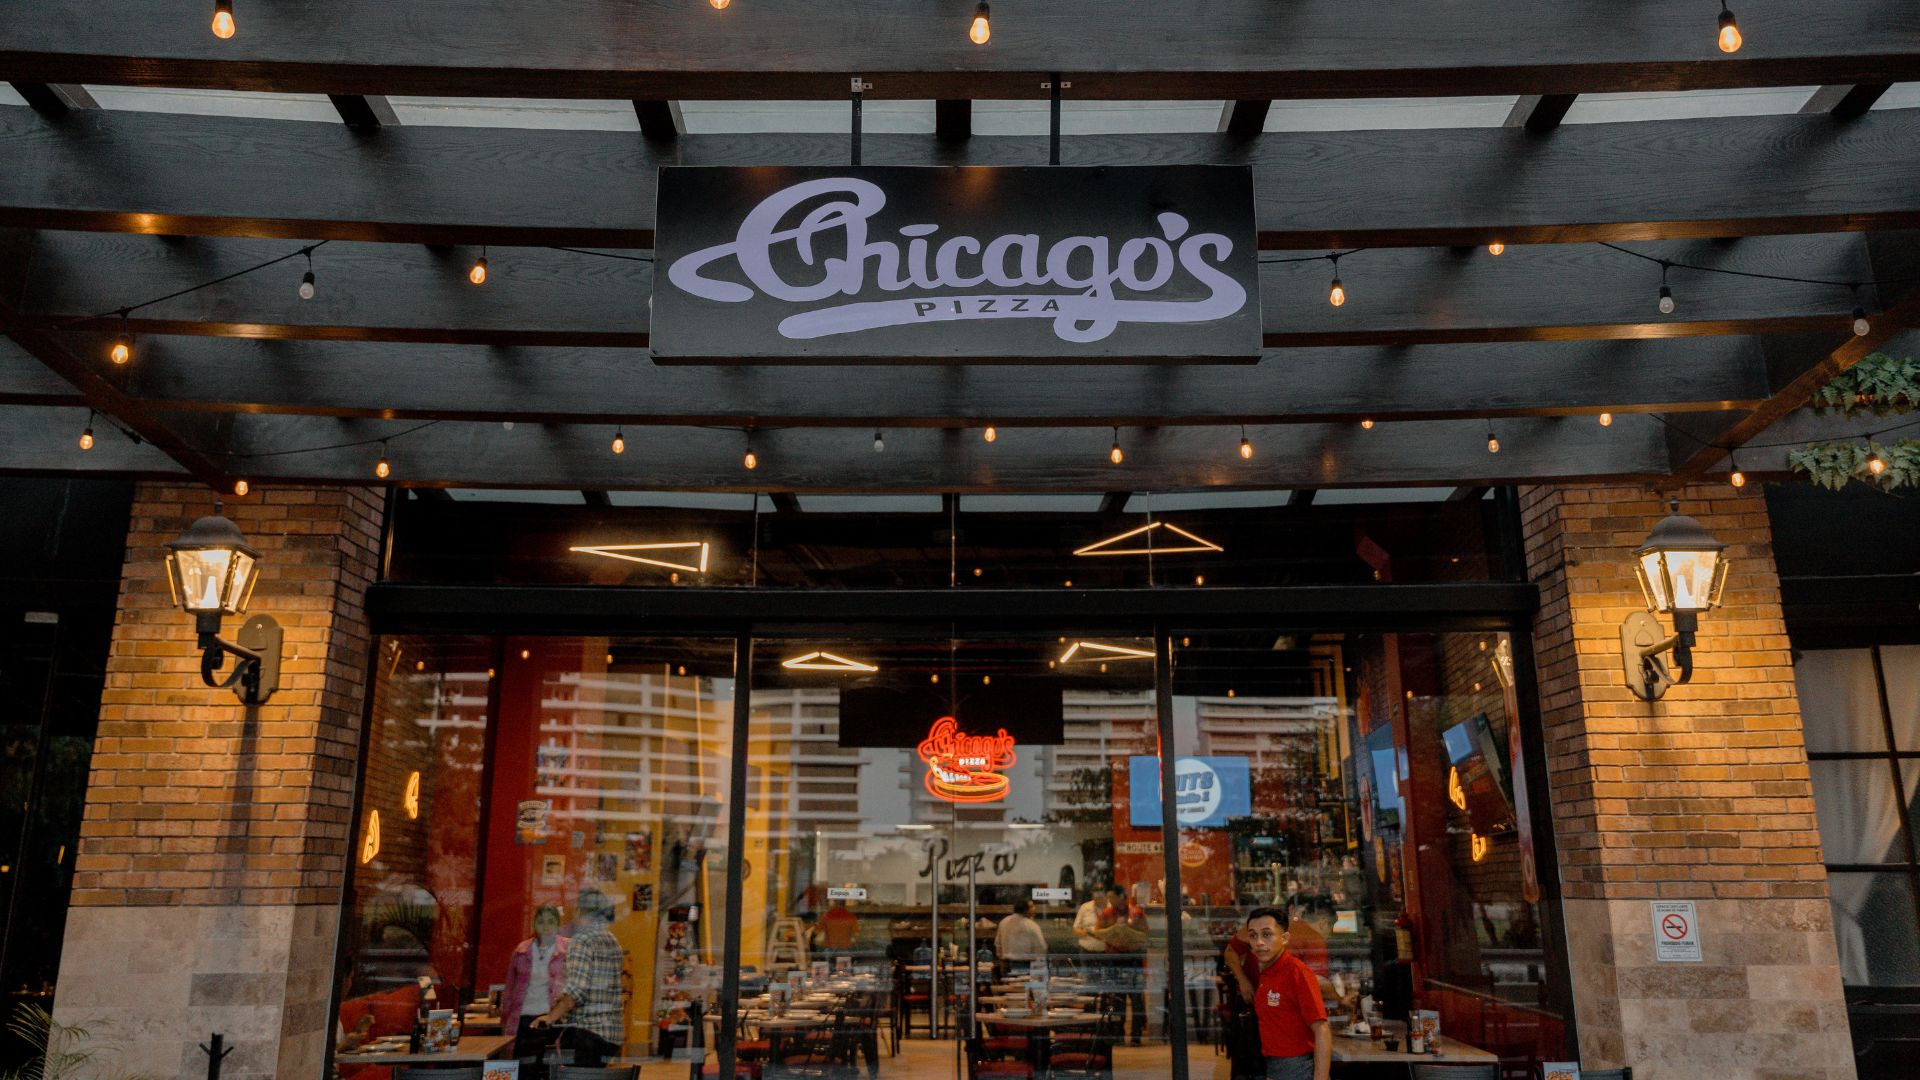 Chicago's Pizza: El rincón de la auténtica gastronomía americana en Mérida estrena menú